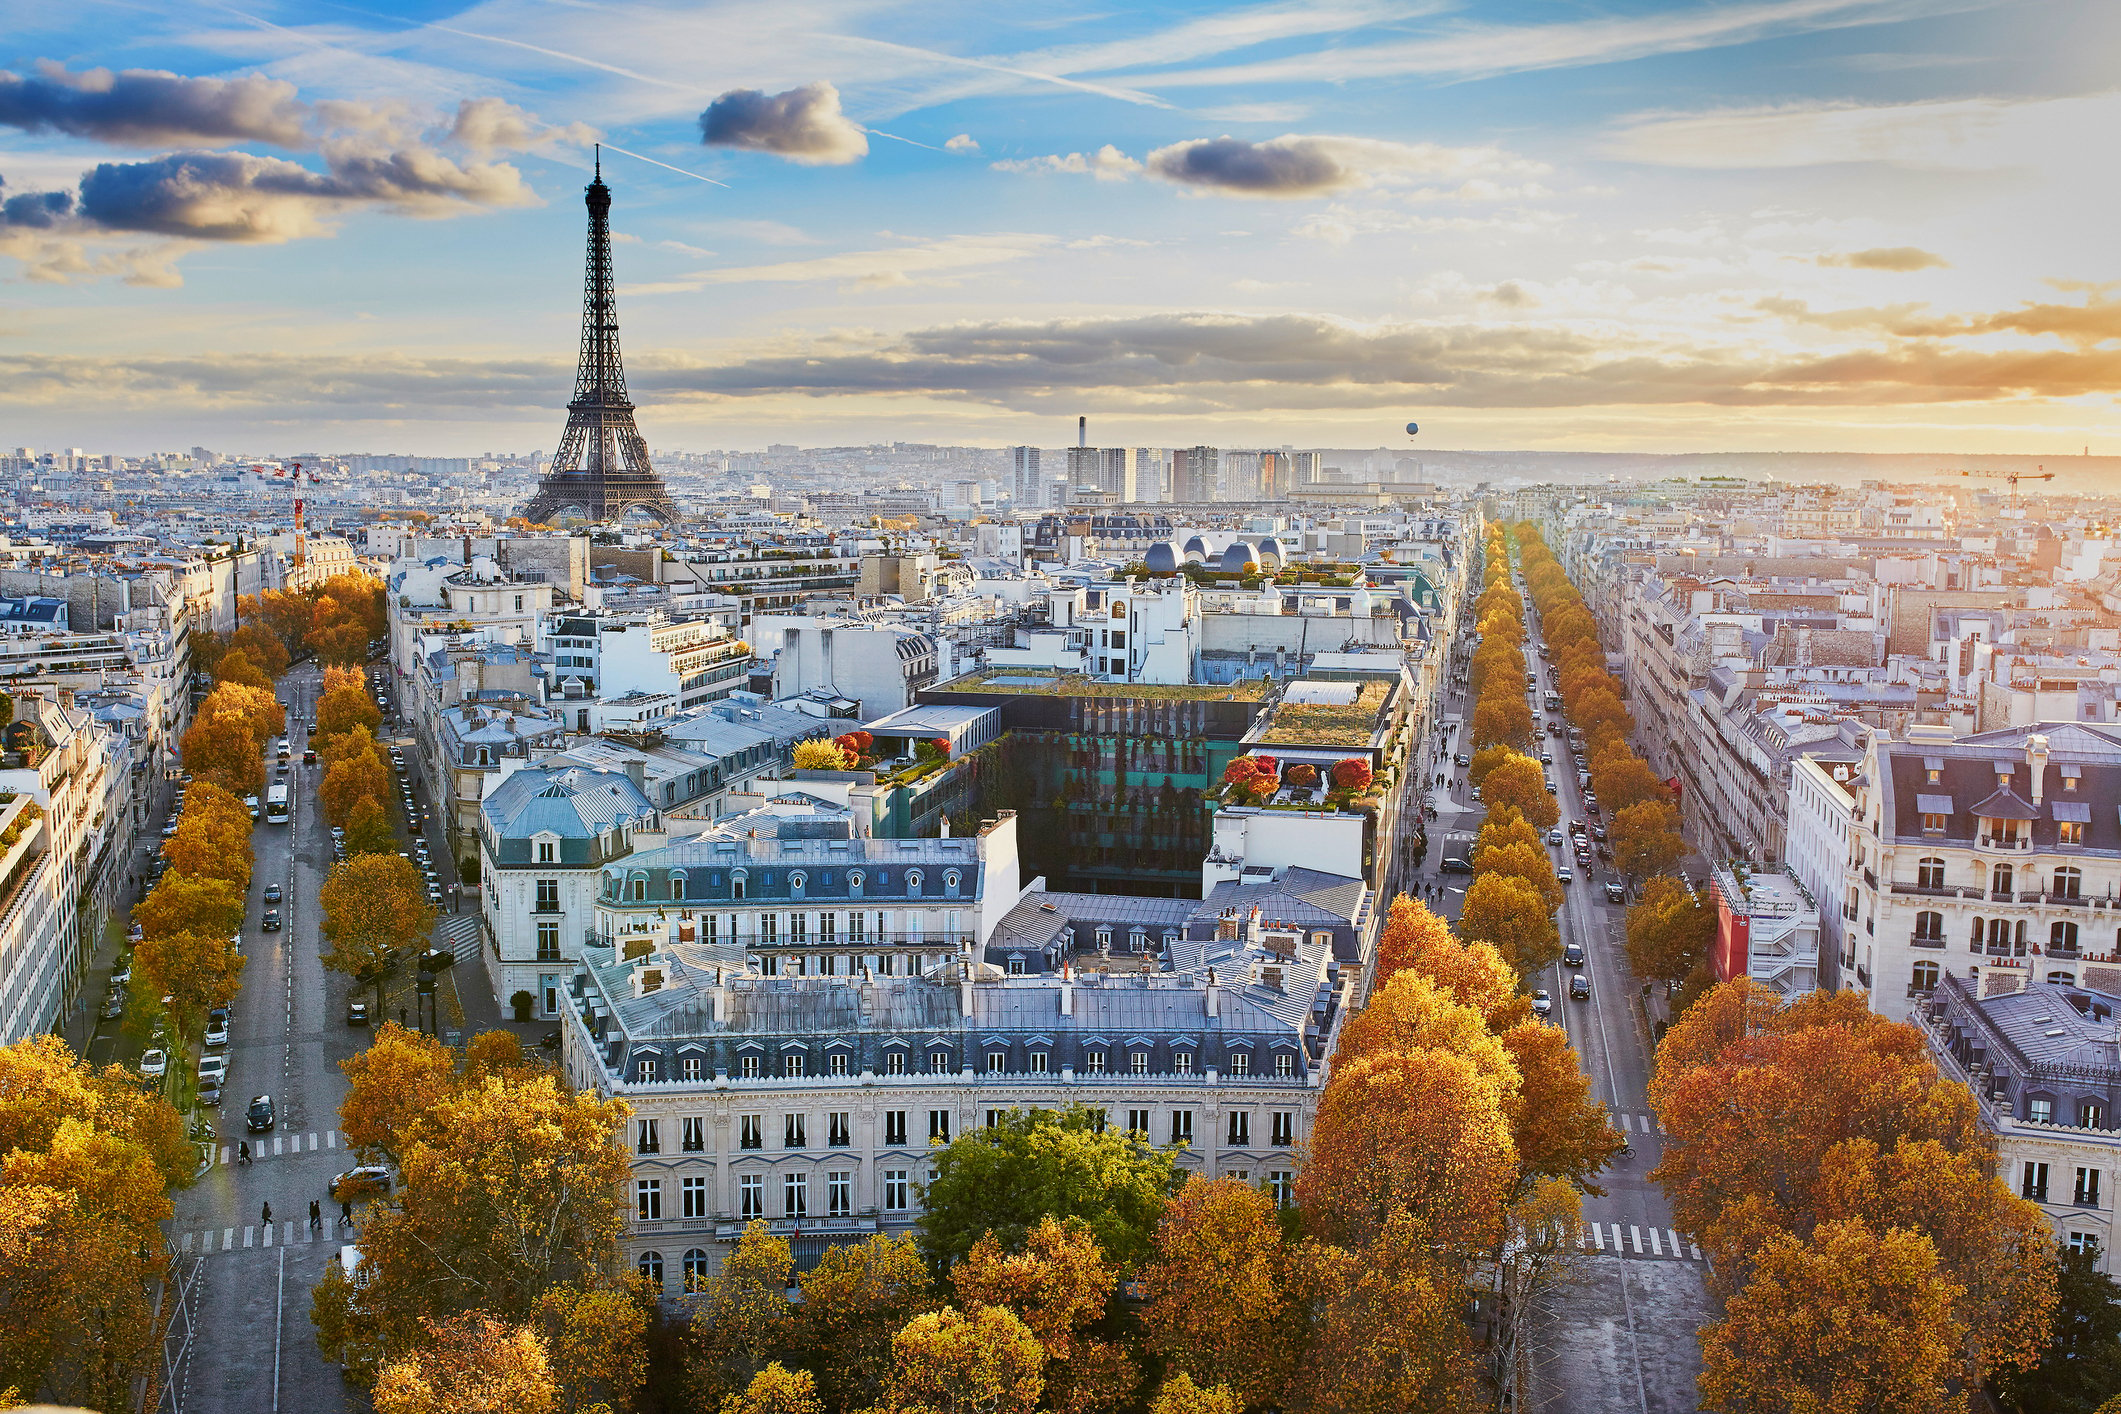 Paris france. Франция Париж Сити. Франция город Париж столица. Париж панорамный снимок. Эйфелева башня Астана.